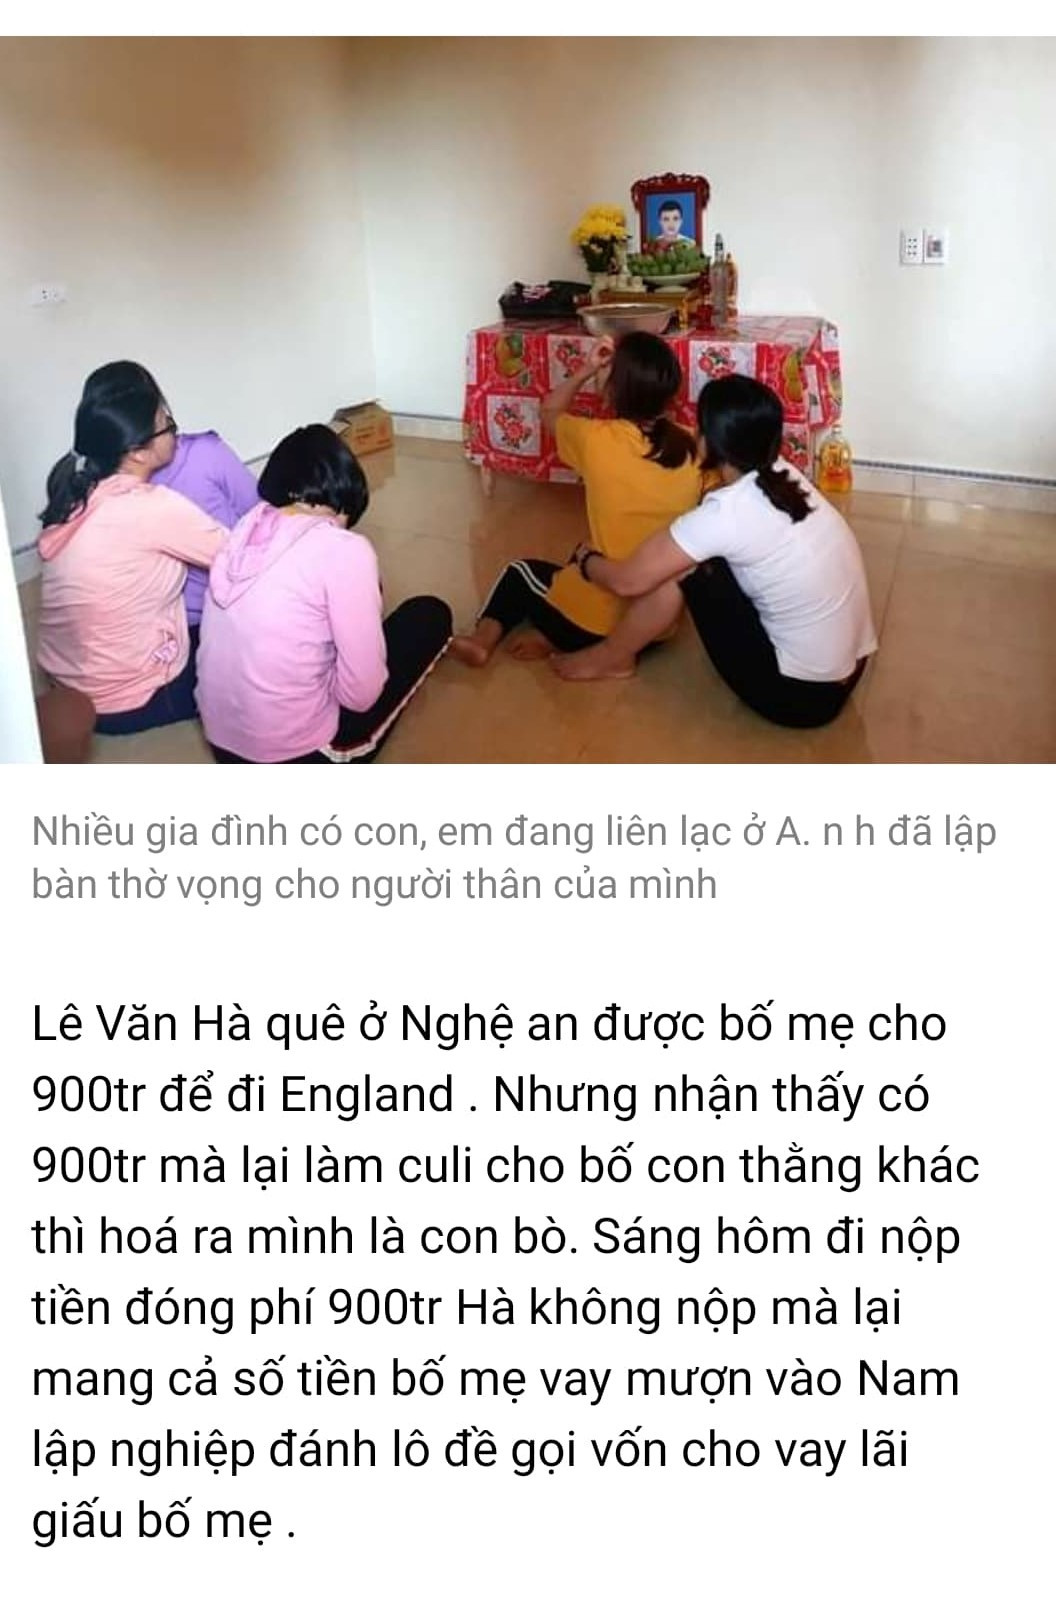 Thông tin trong trang thông tin điện tử này nói rằng, trường hợp này là anh Lê Văn Hà, nhưng hình ảnh lại là bàn thờ ở gia đình anh Nguyễn Đình Tứ mà phóng viên Báo Nghệ An chụp.